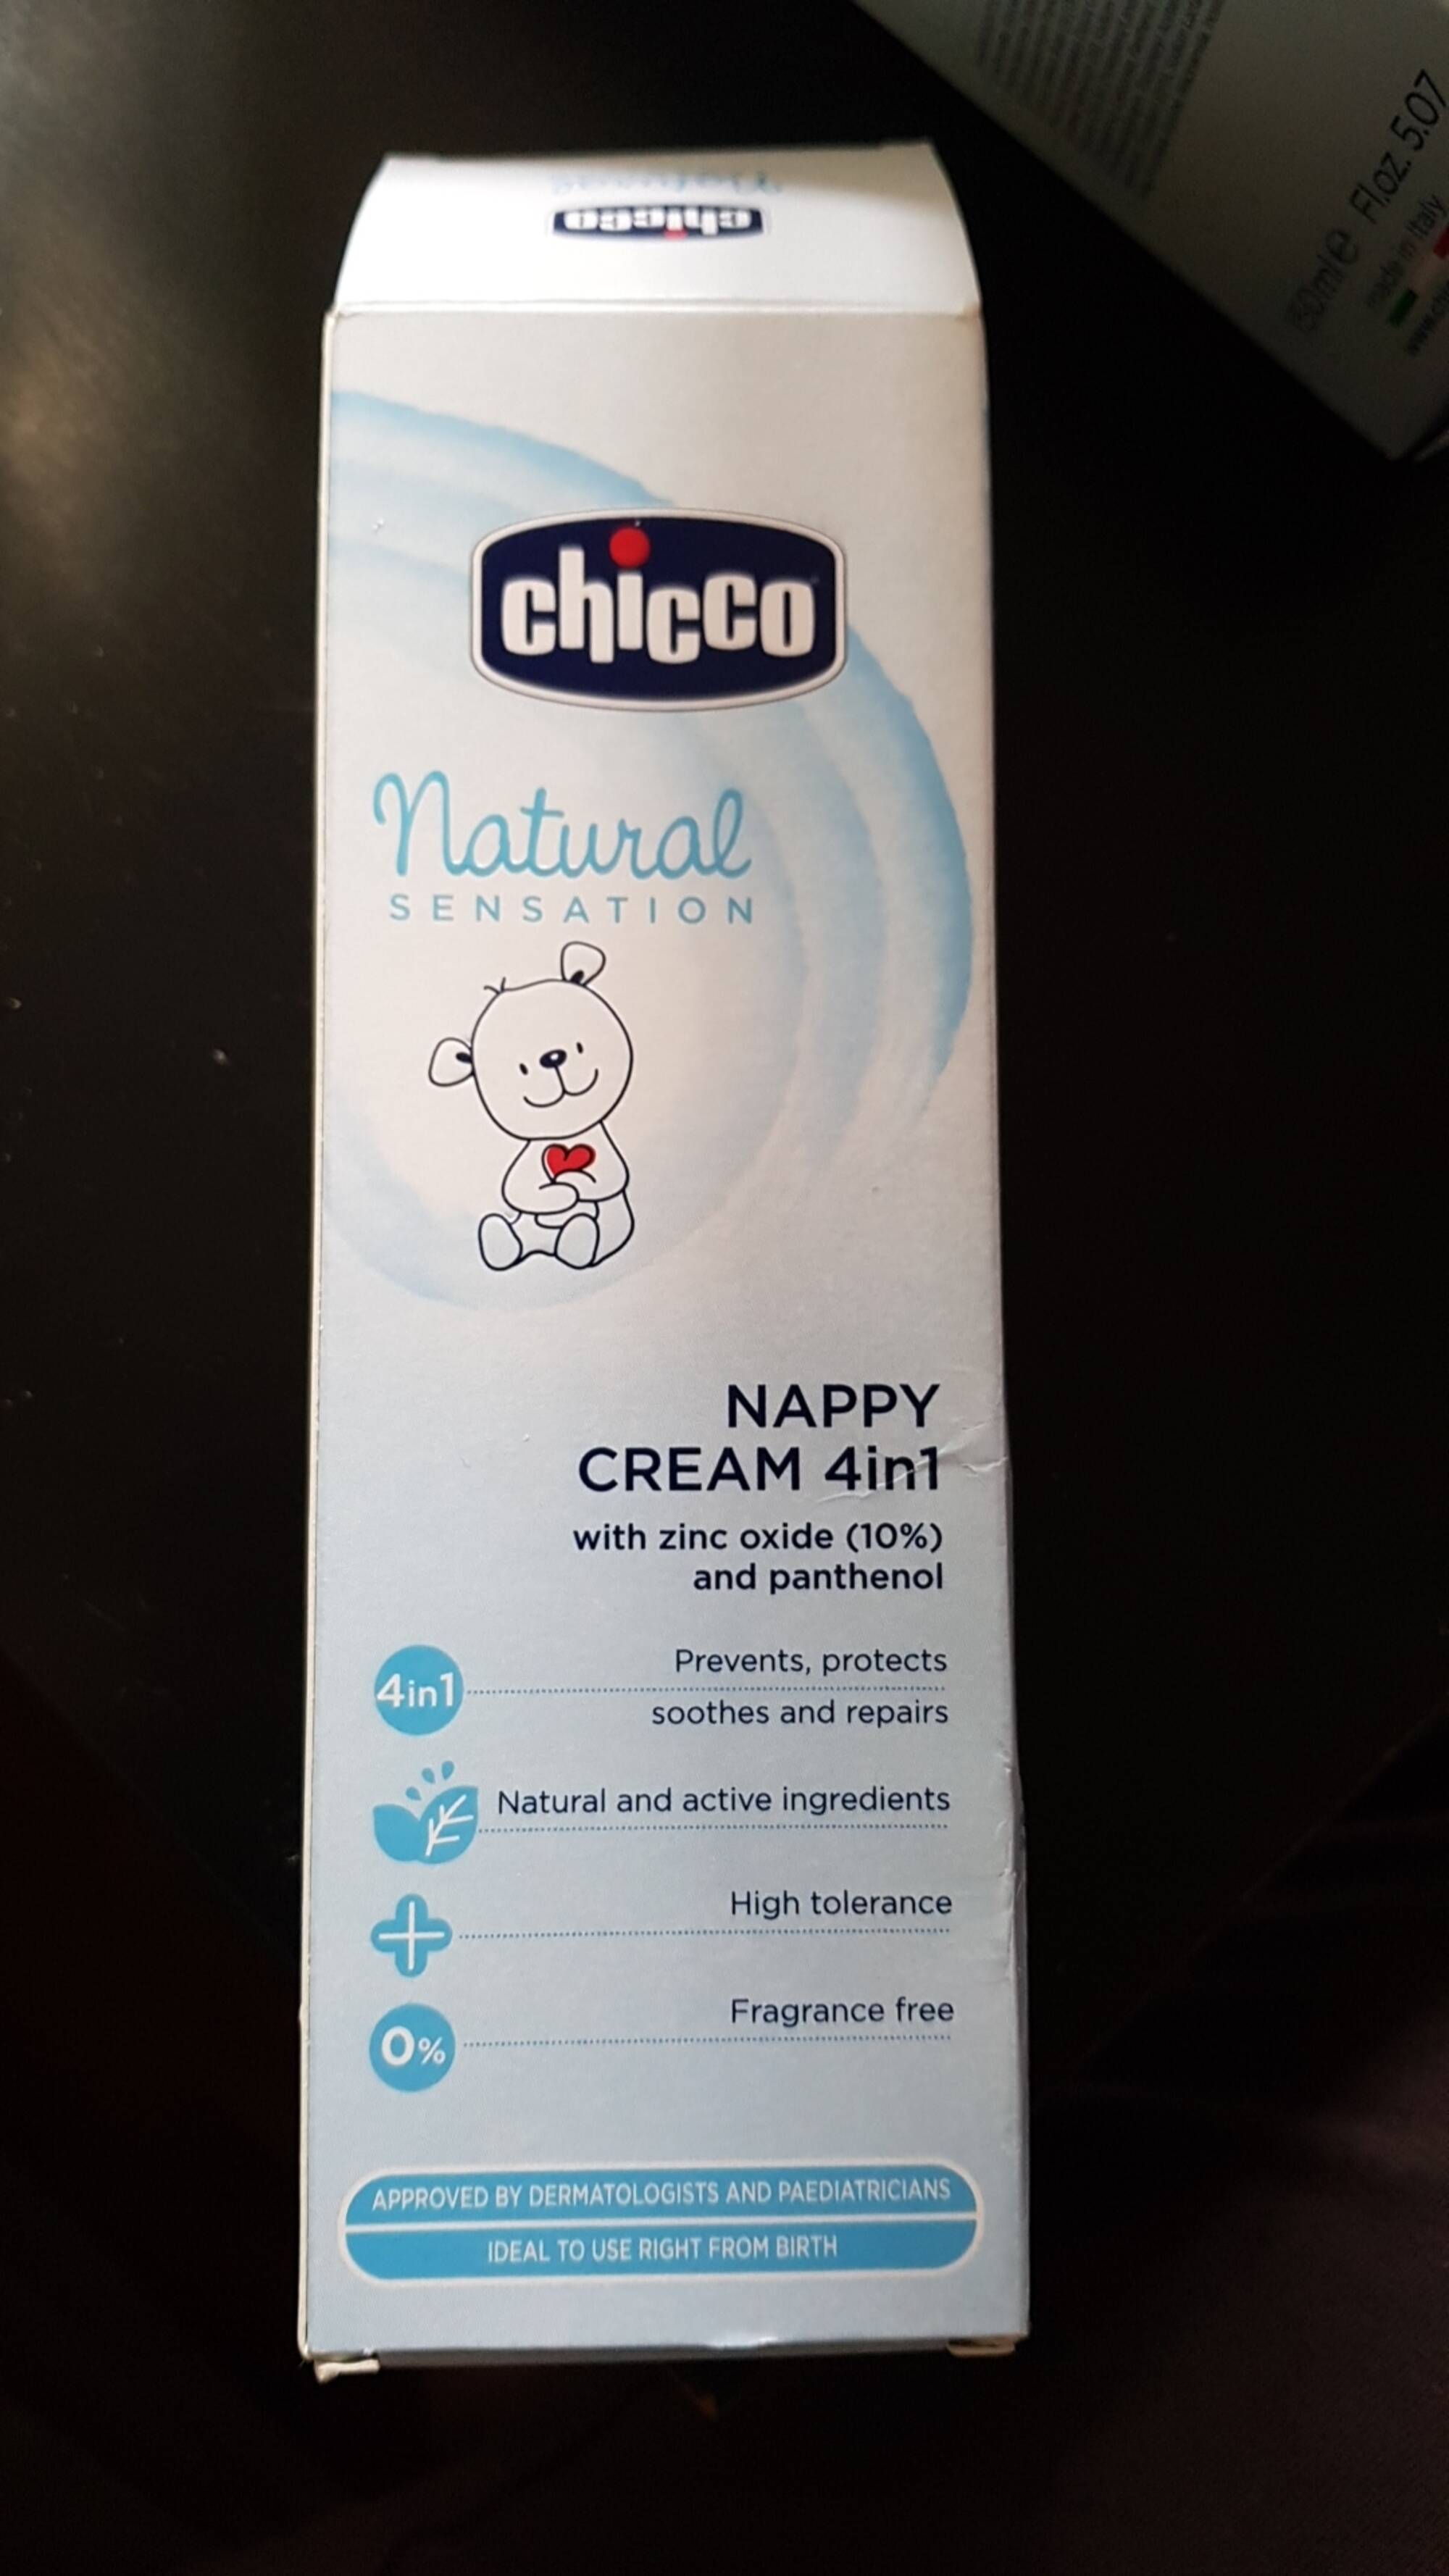 CHICCO - Natural sensation - Nappy cream 4 in 1